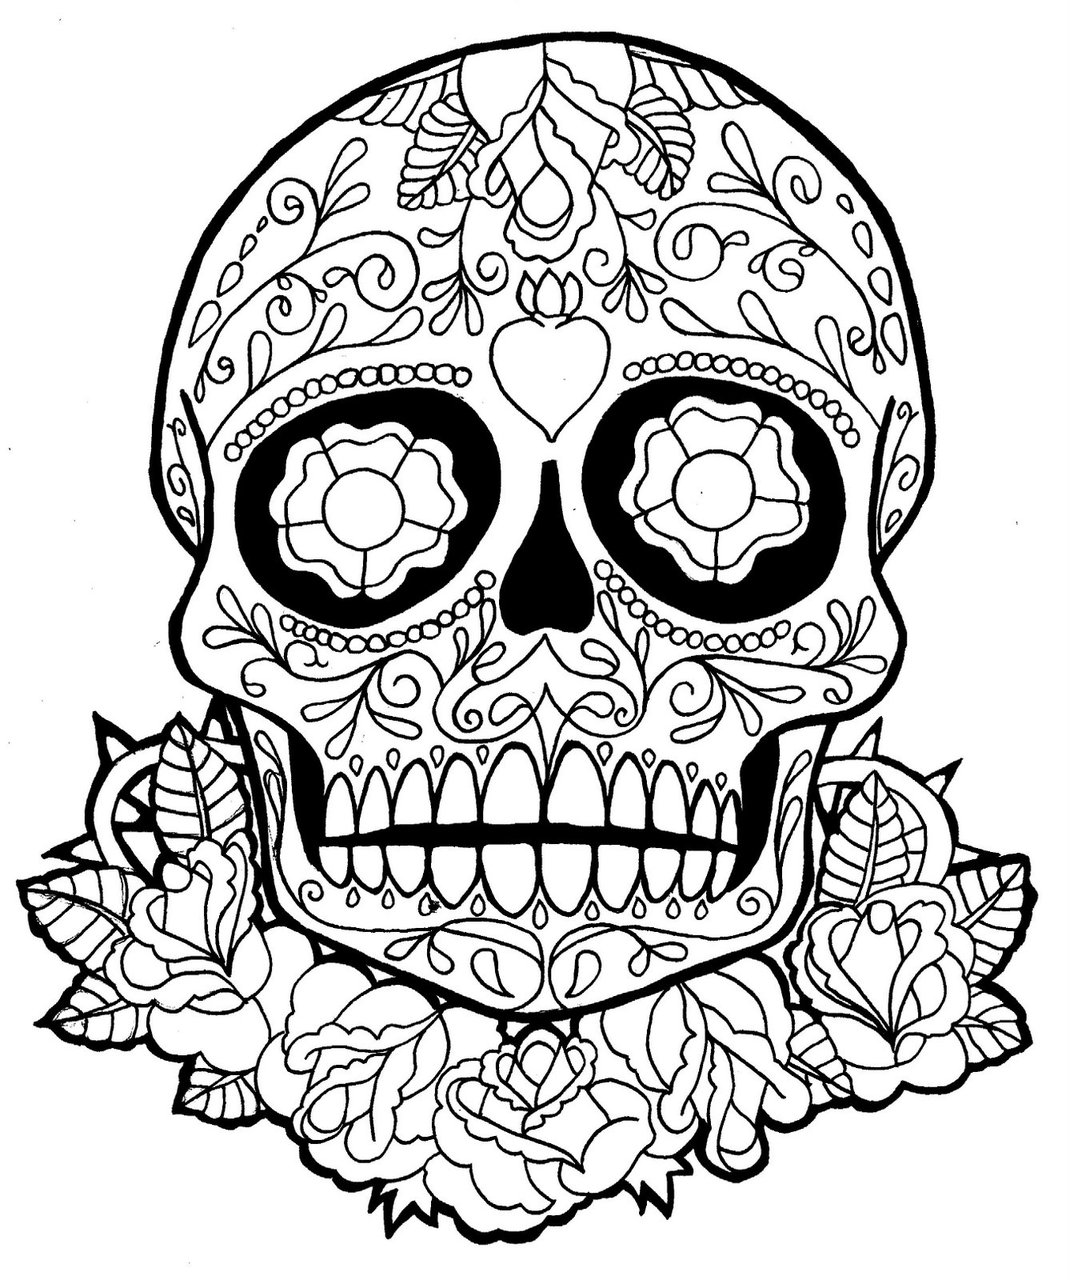 Incredible skull to color Día de los Muertos